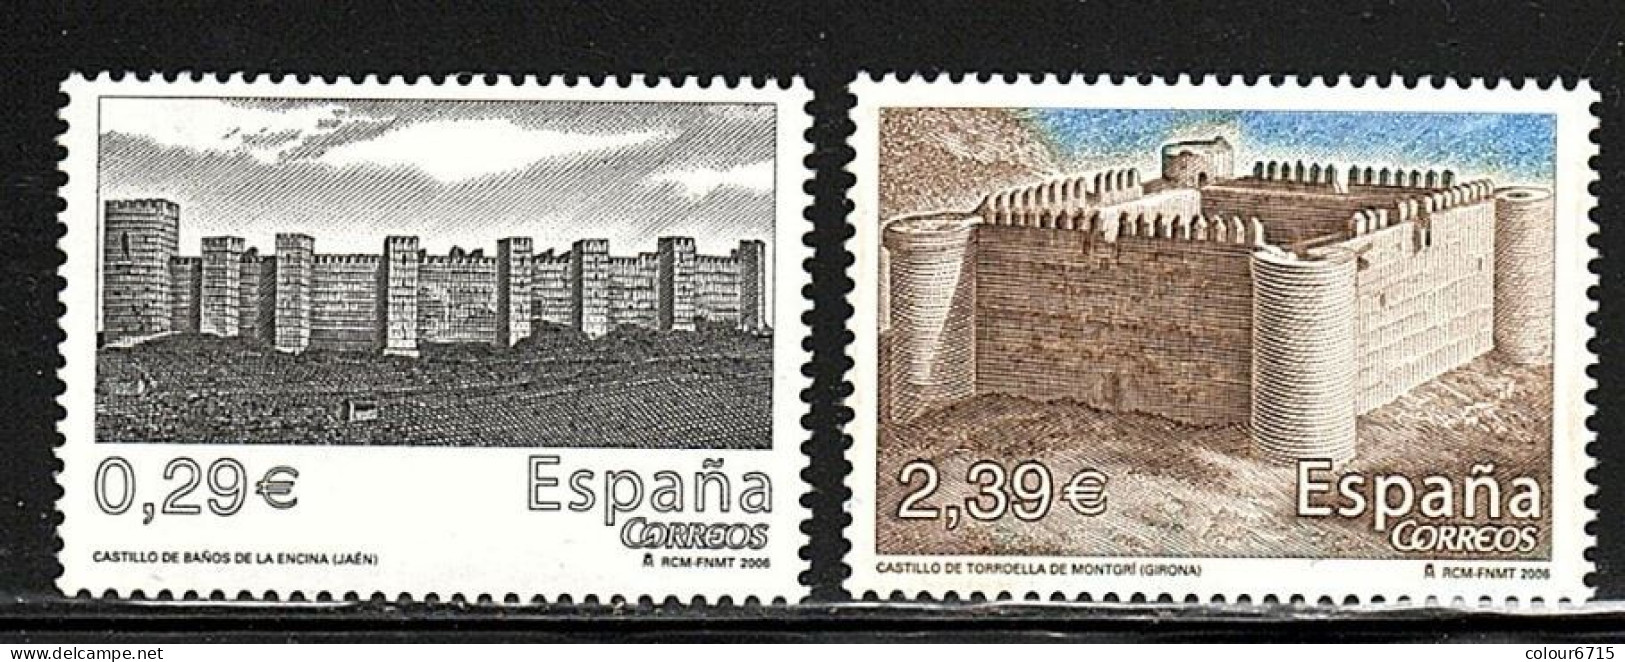 Spain 2006 Castles Stamps 2v MNH - Ongebruikt